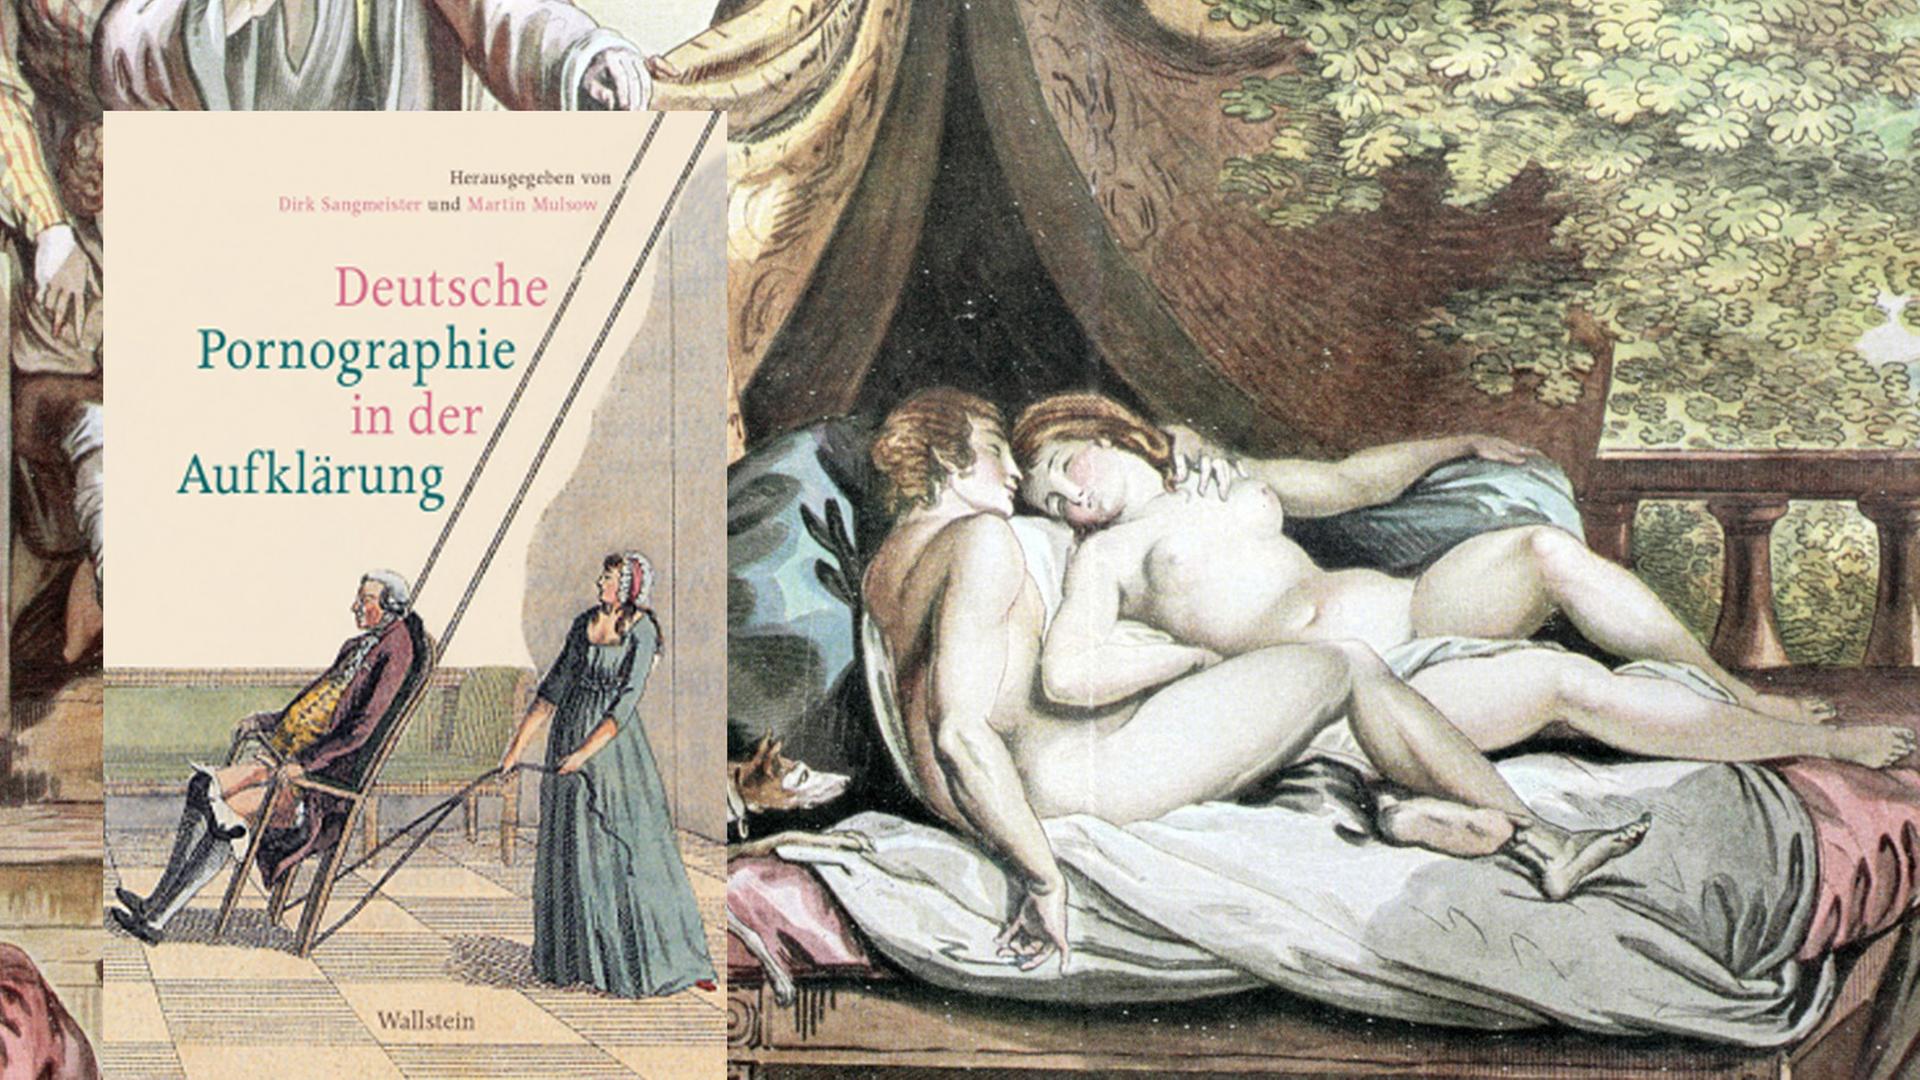 Buchcover "Deutsche Pornographie in der Aufklärung" und "Das überraschte Liebespaar", handkolorierter Kupferstich von J.A. Ramberg aus dem Jahr 1799 (Ausschnitt)